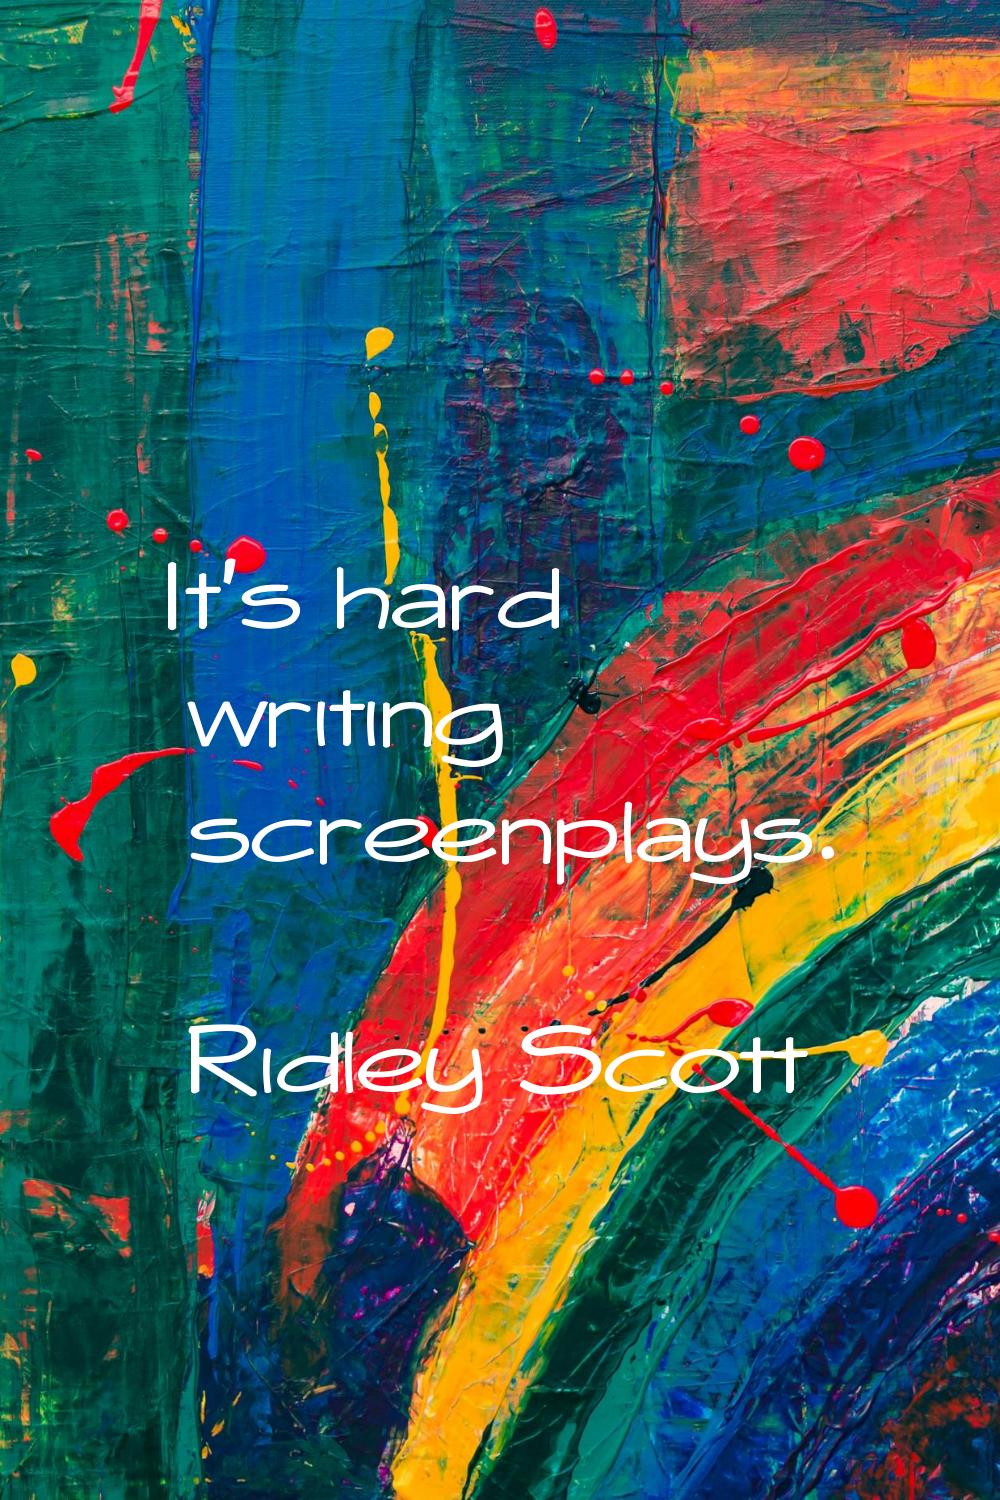 It's hard writing screenplays.